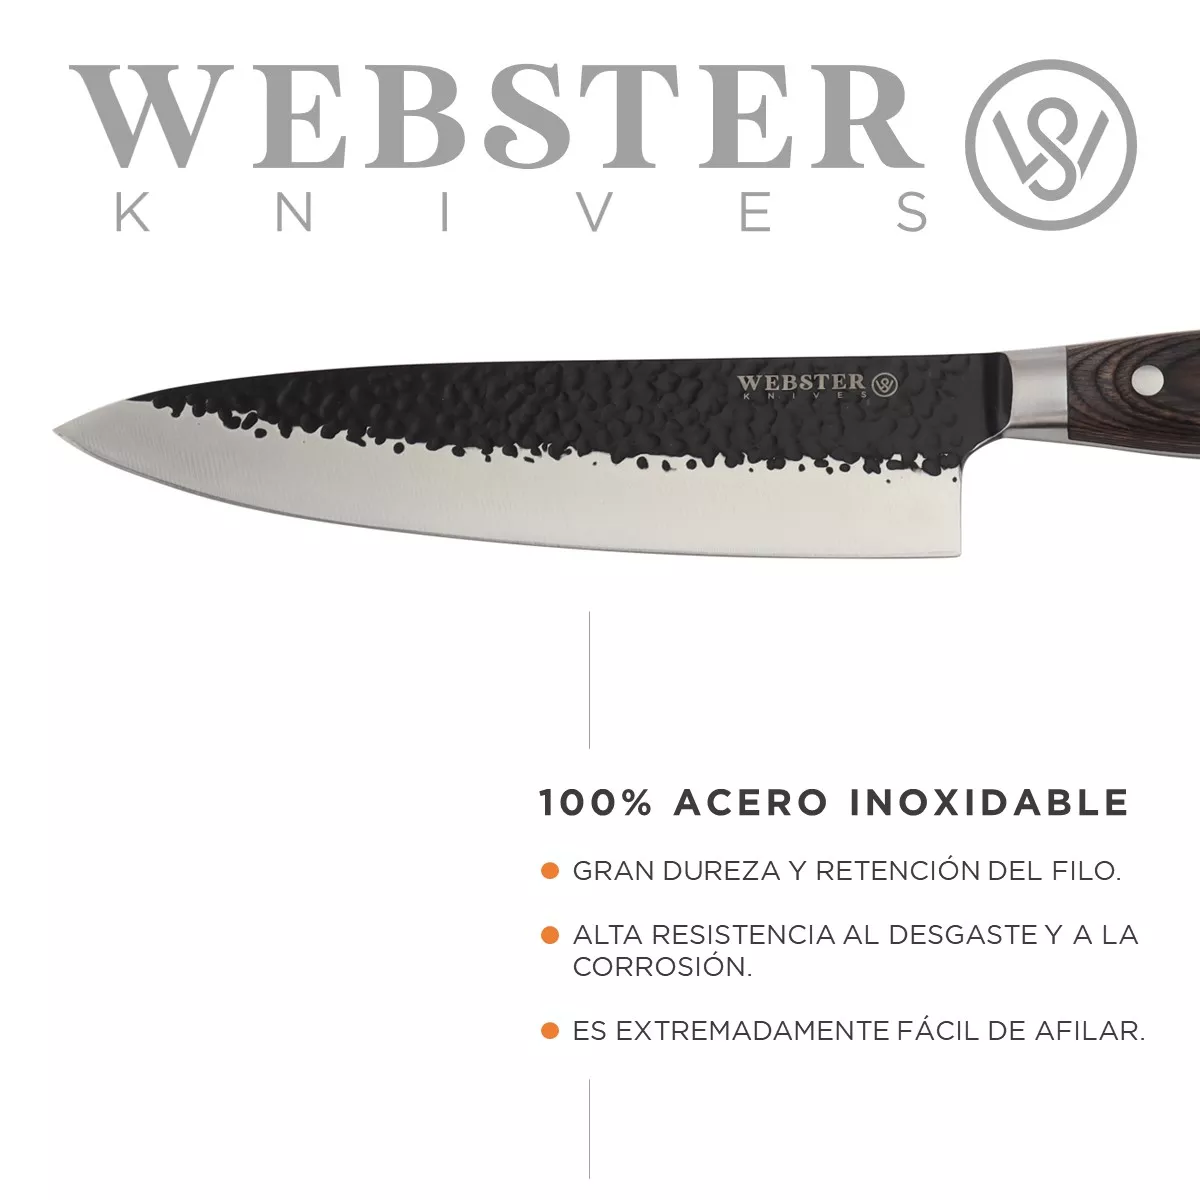 Segunda imagen para búsqueda de cuchillos chef